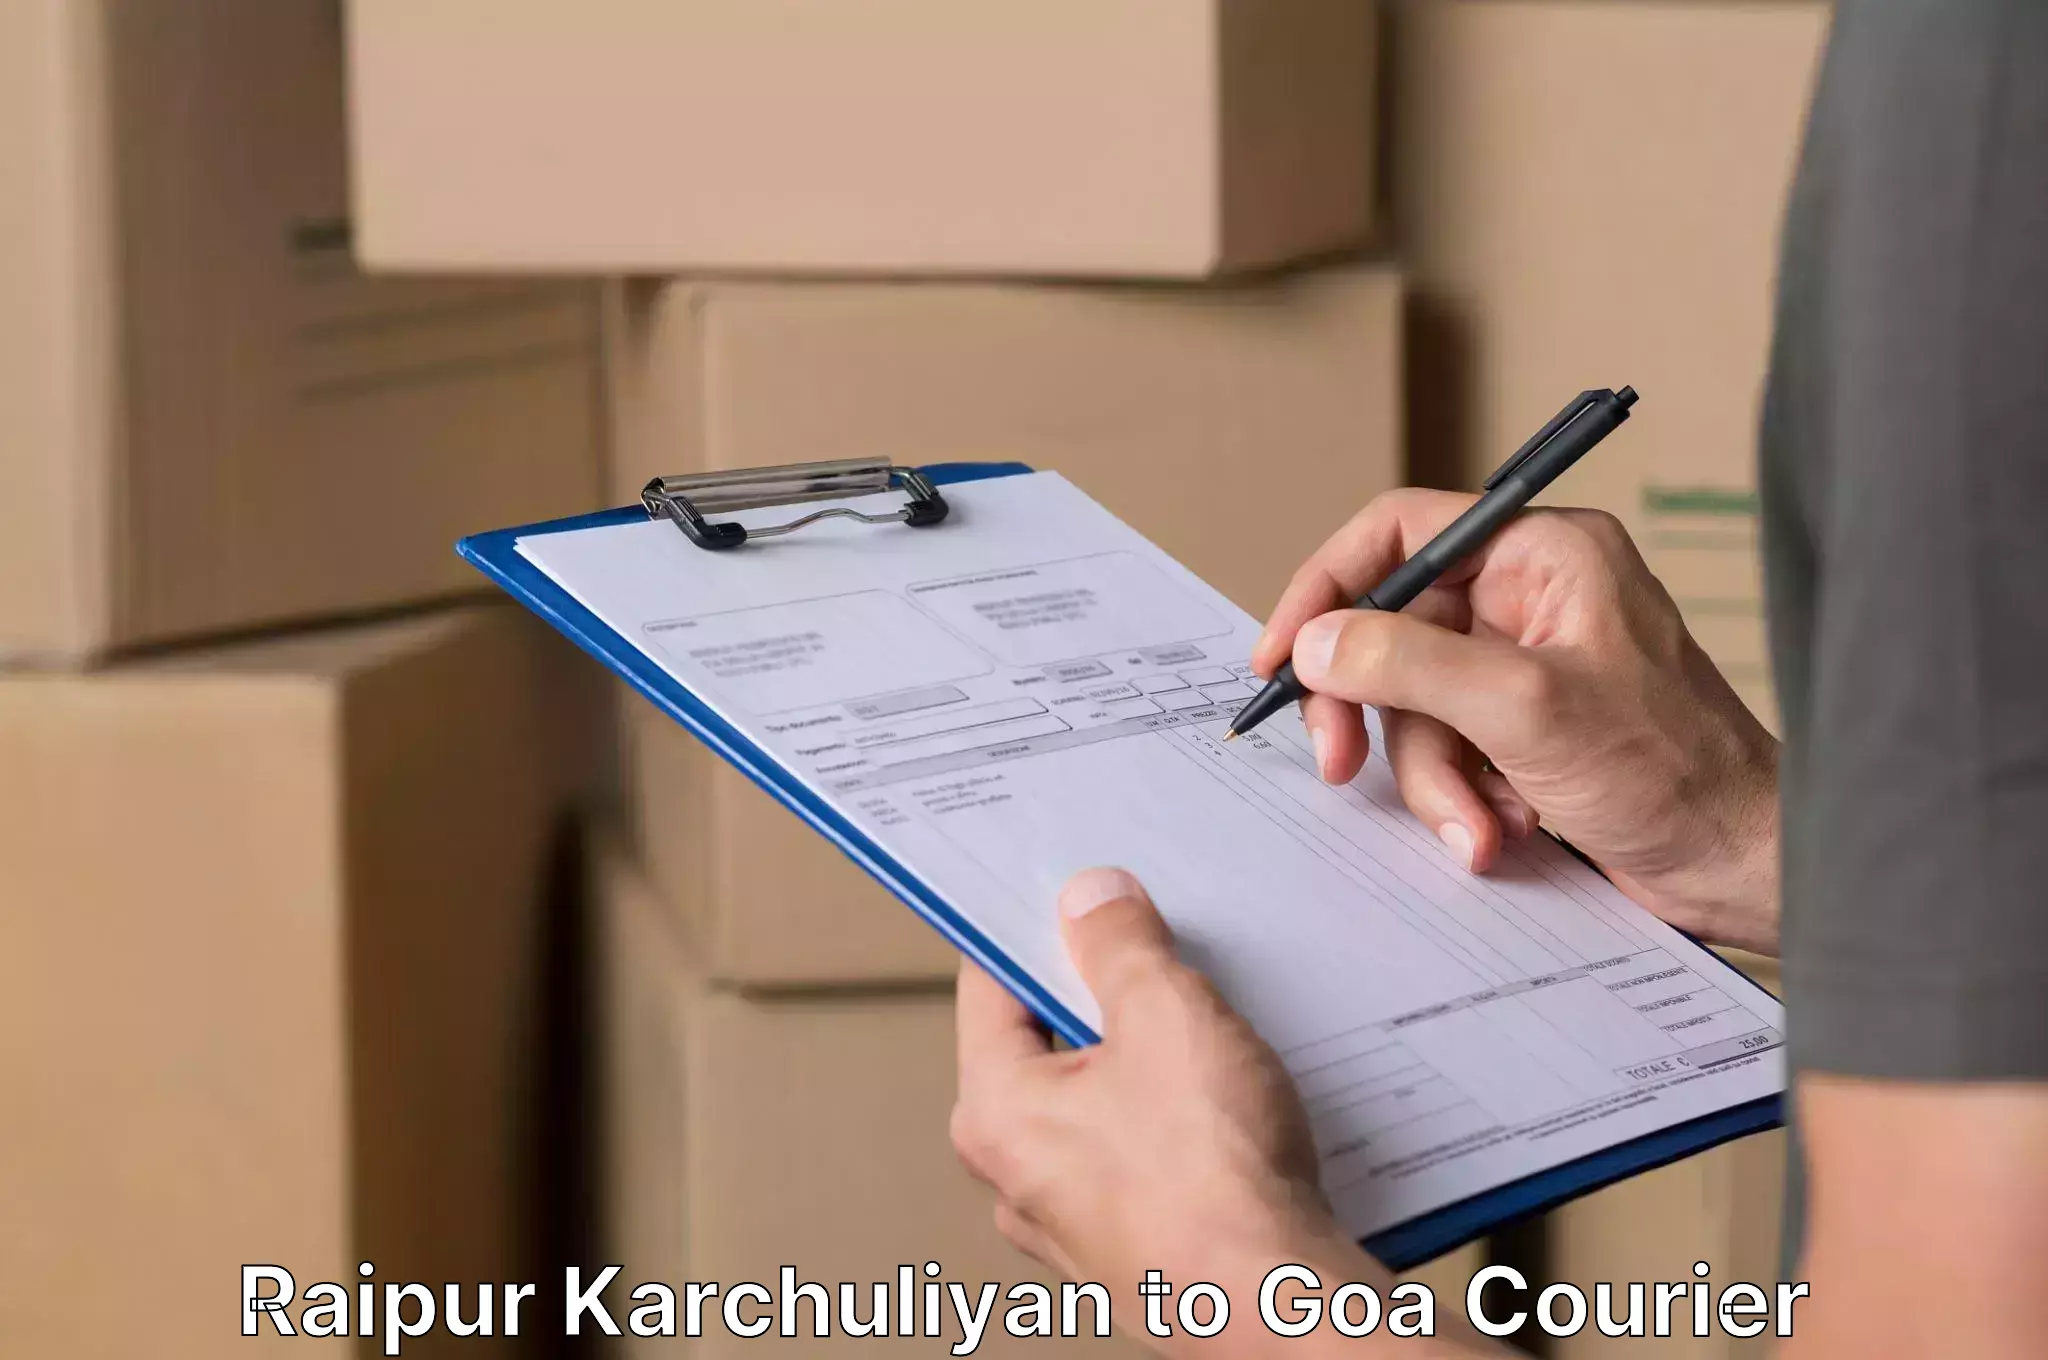 Professional furniture moving Raipur Karchuliyan to Goa